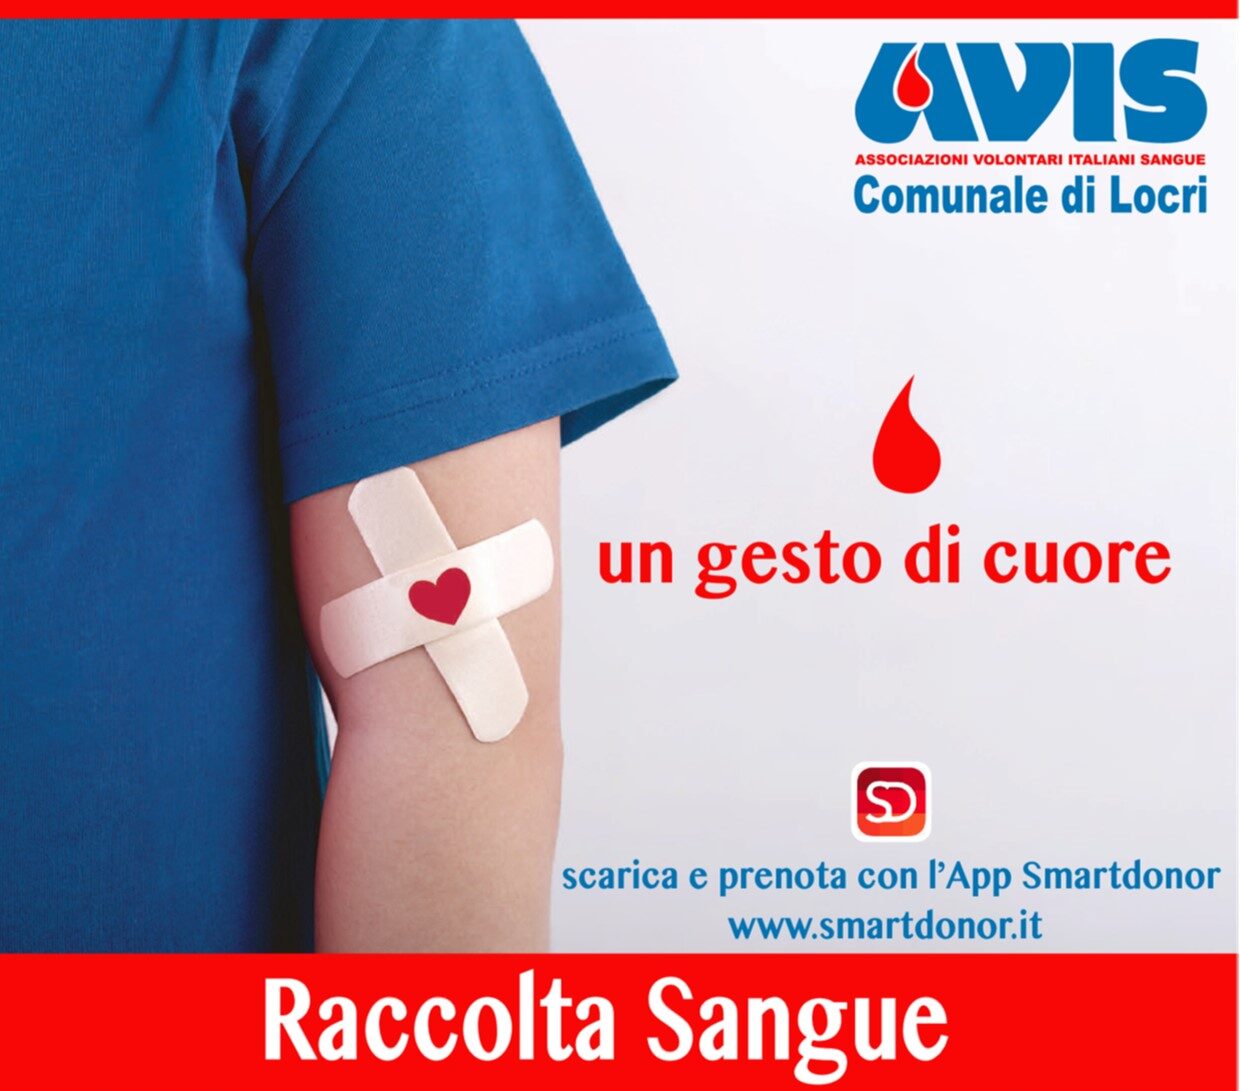 L’AVIS Comunale di Locri comunica le date delle raccolte di sangue per il mese di luglio 2022